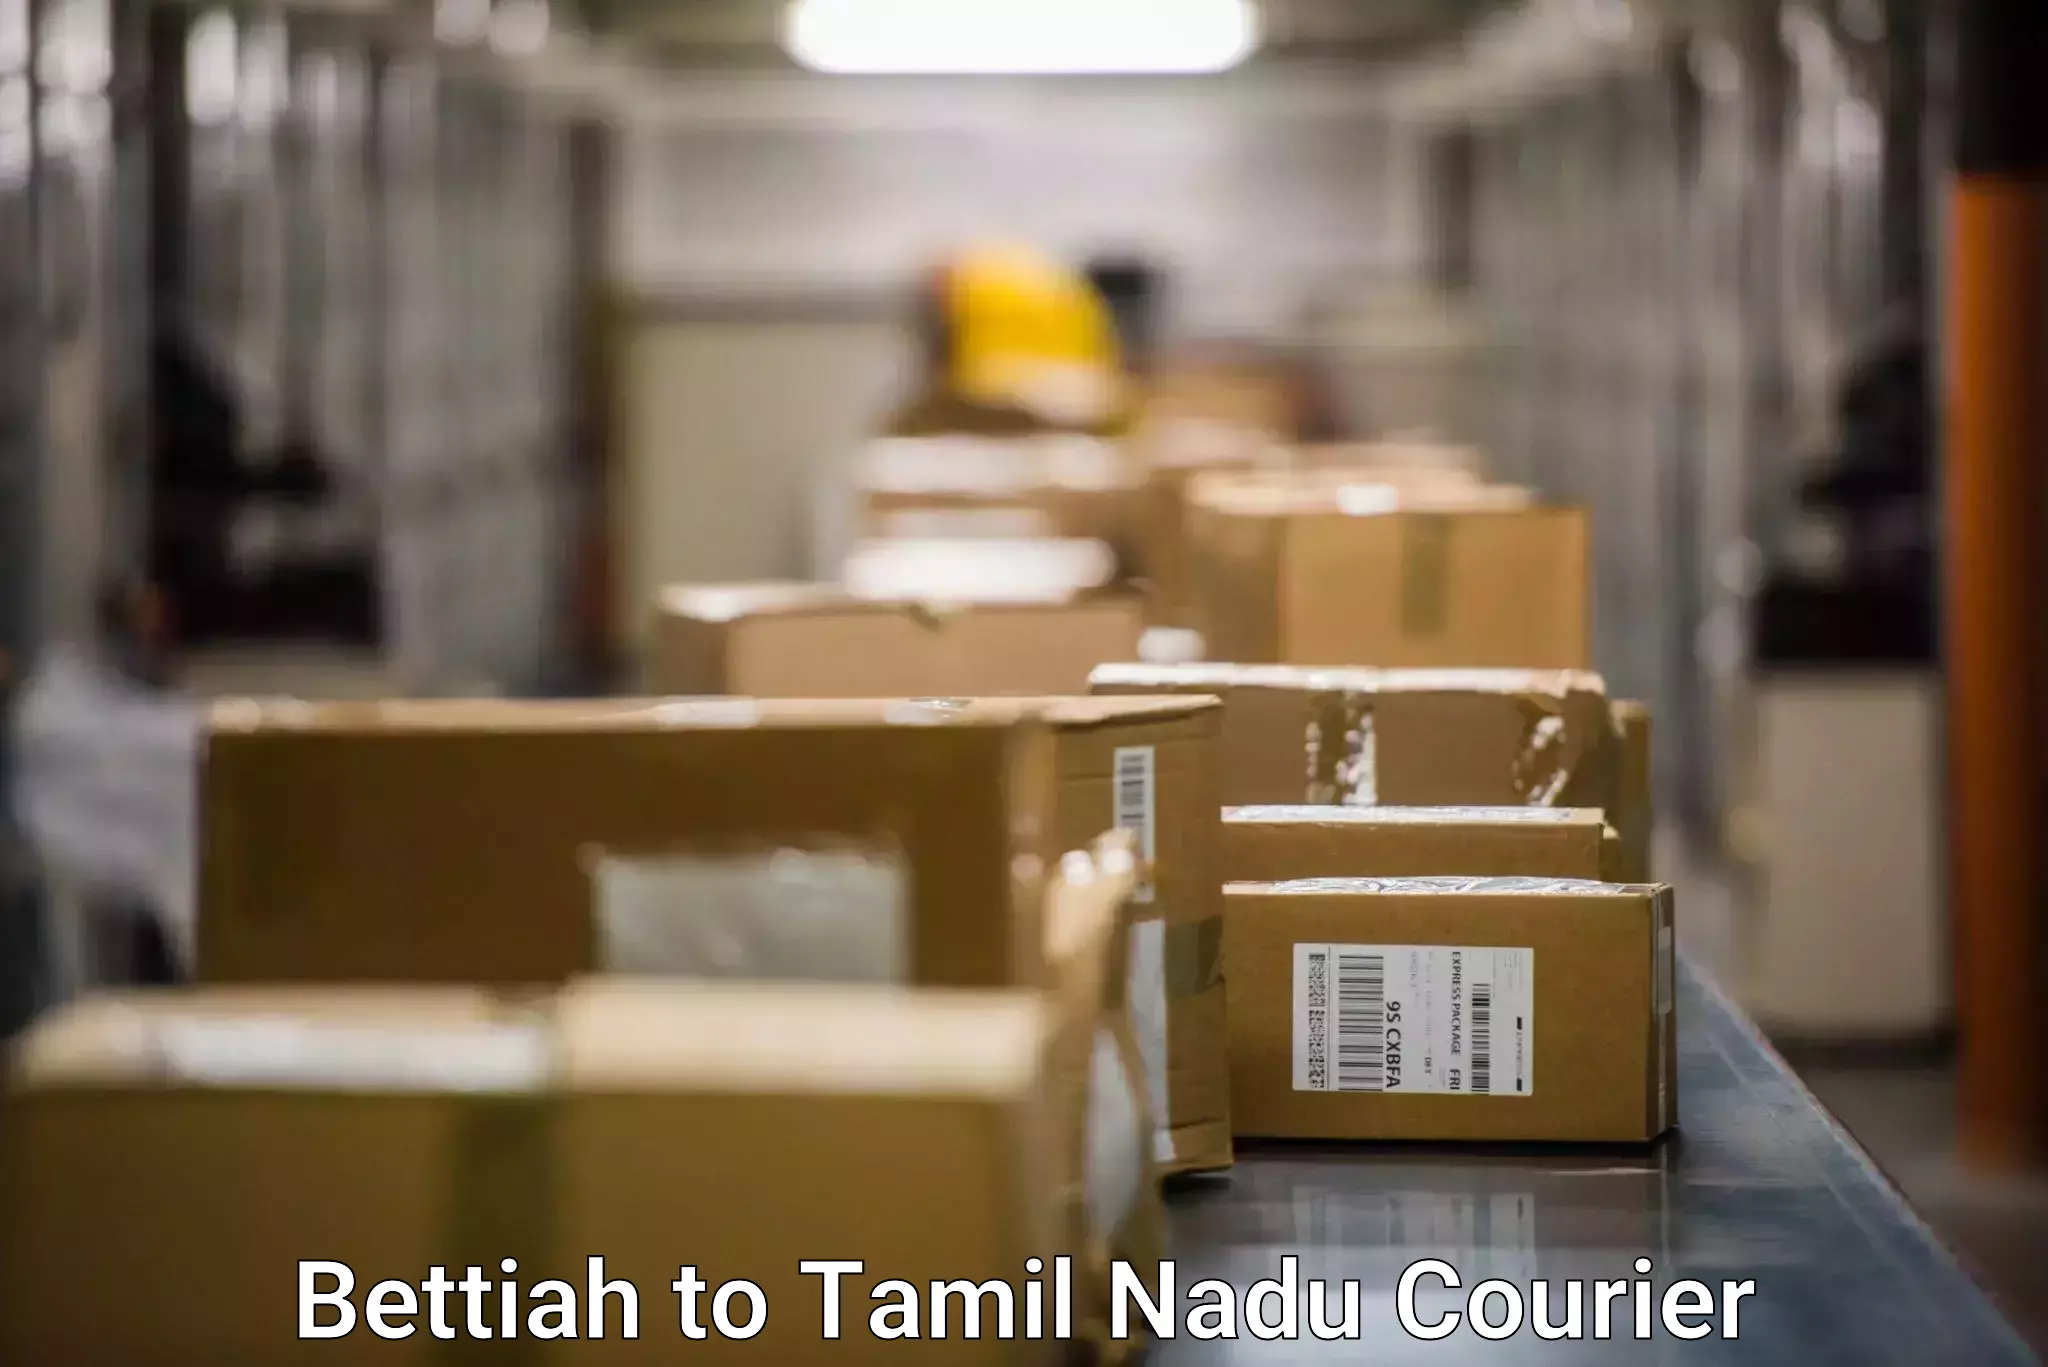 Tech-enabled shipping Bettiah to Palani